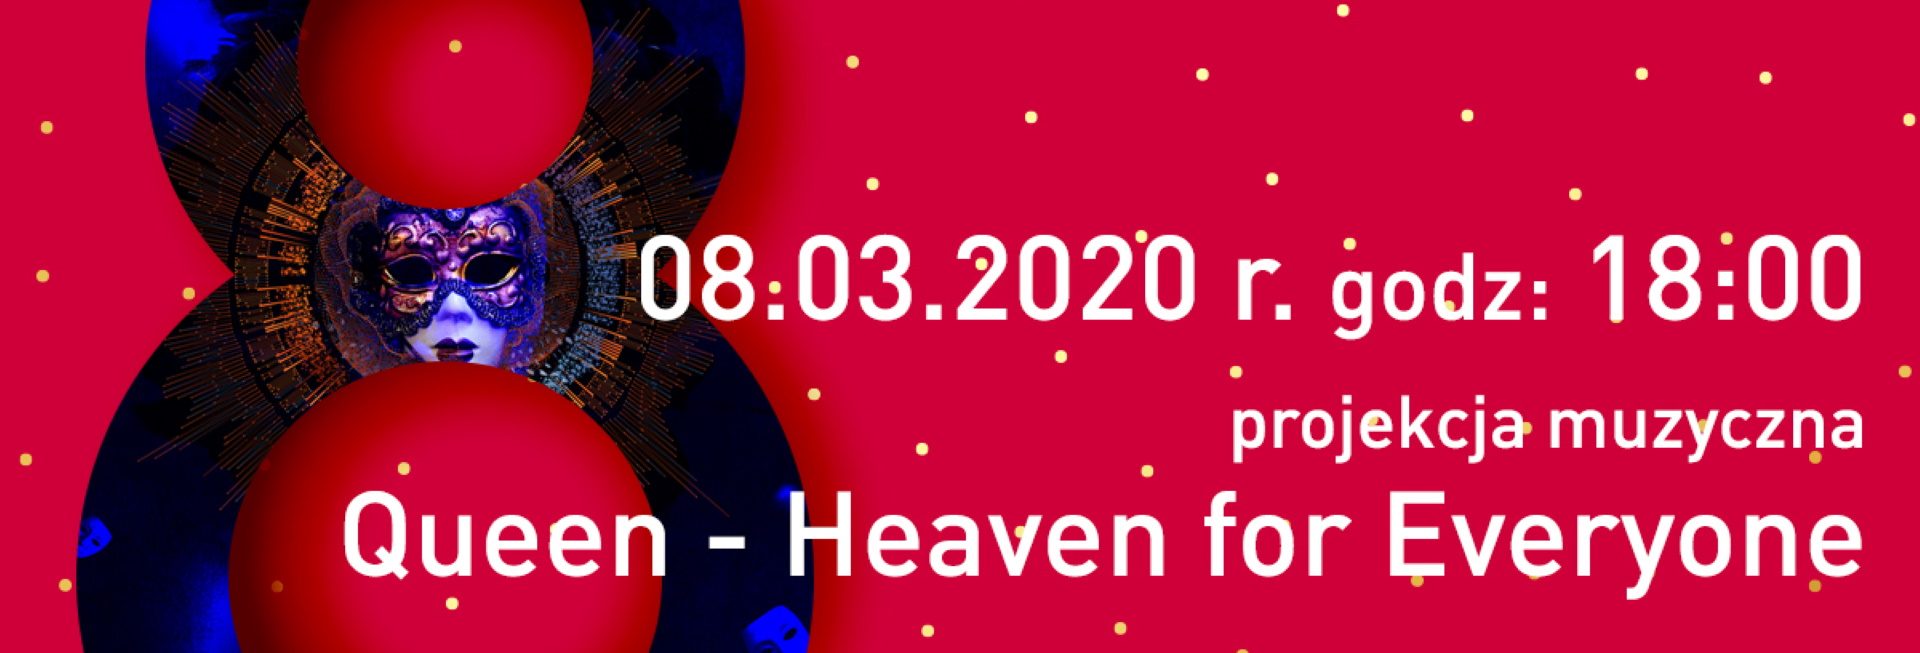 Plakat graficzny zapraszający do Olsztyńskiego Planetarium na Dzień Kobiet w Planetarium - Queen - Heaven for Everyone Olsztyn 2022.